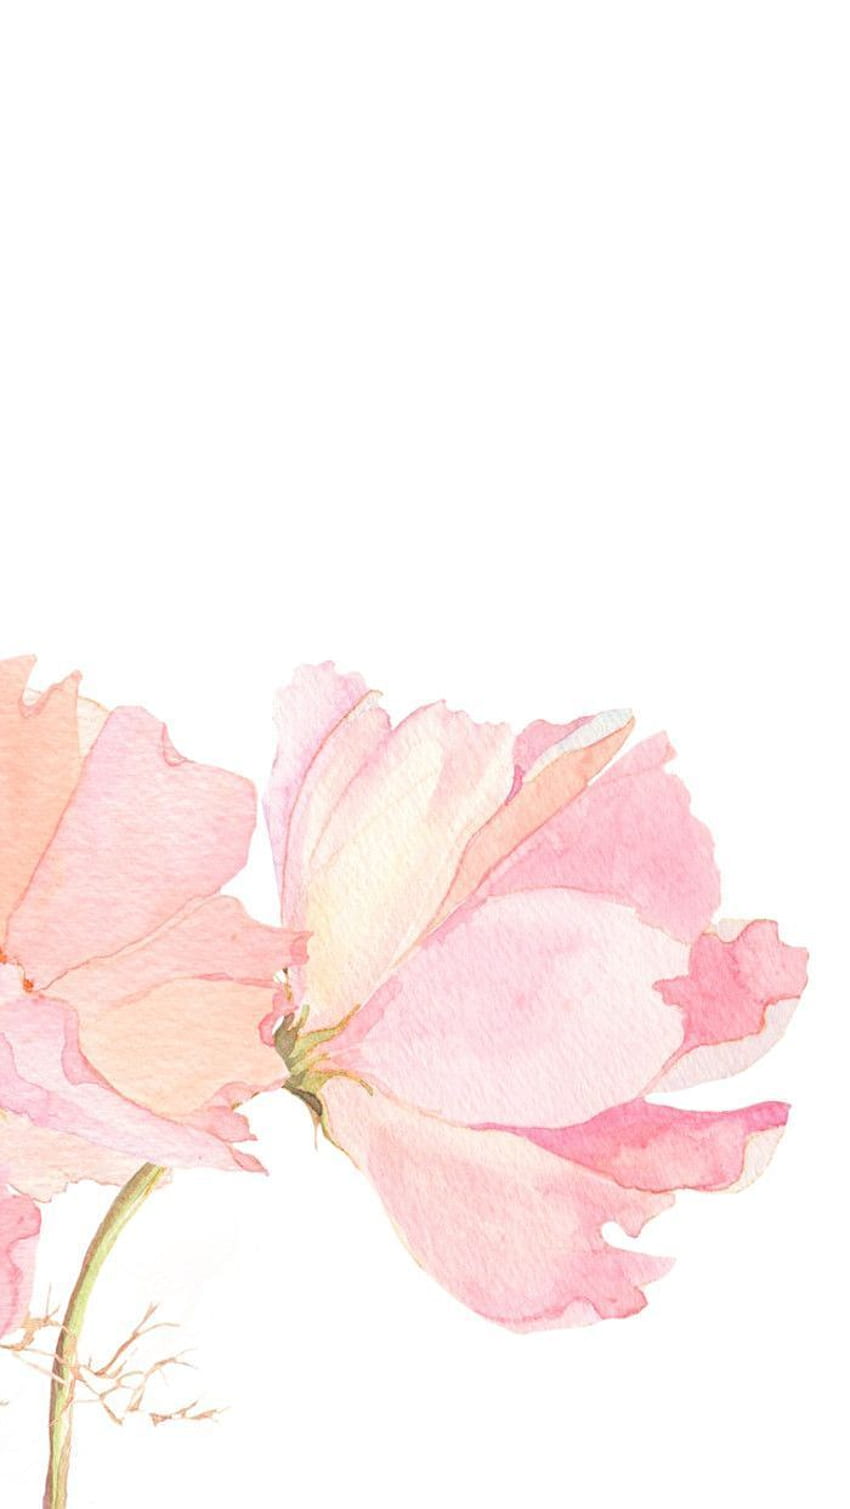 terbaik tentang Çiçek. Latar belakang gemerlap merah muda, Bunga Cat Air Sederhana wallpaper ponsel HD